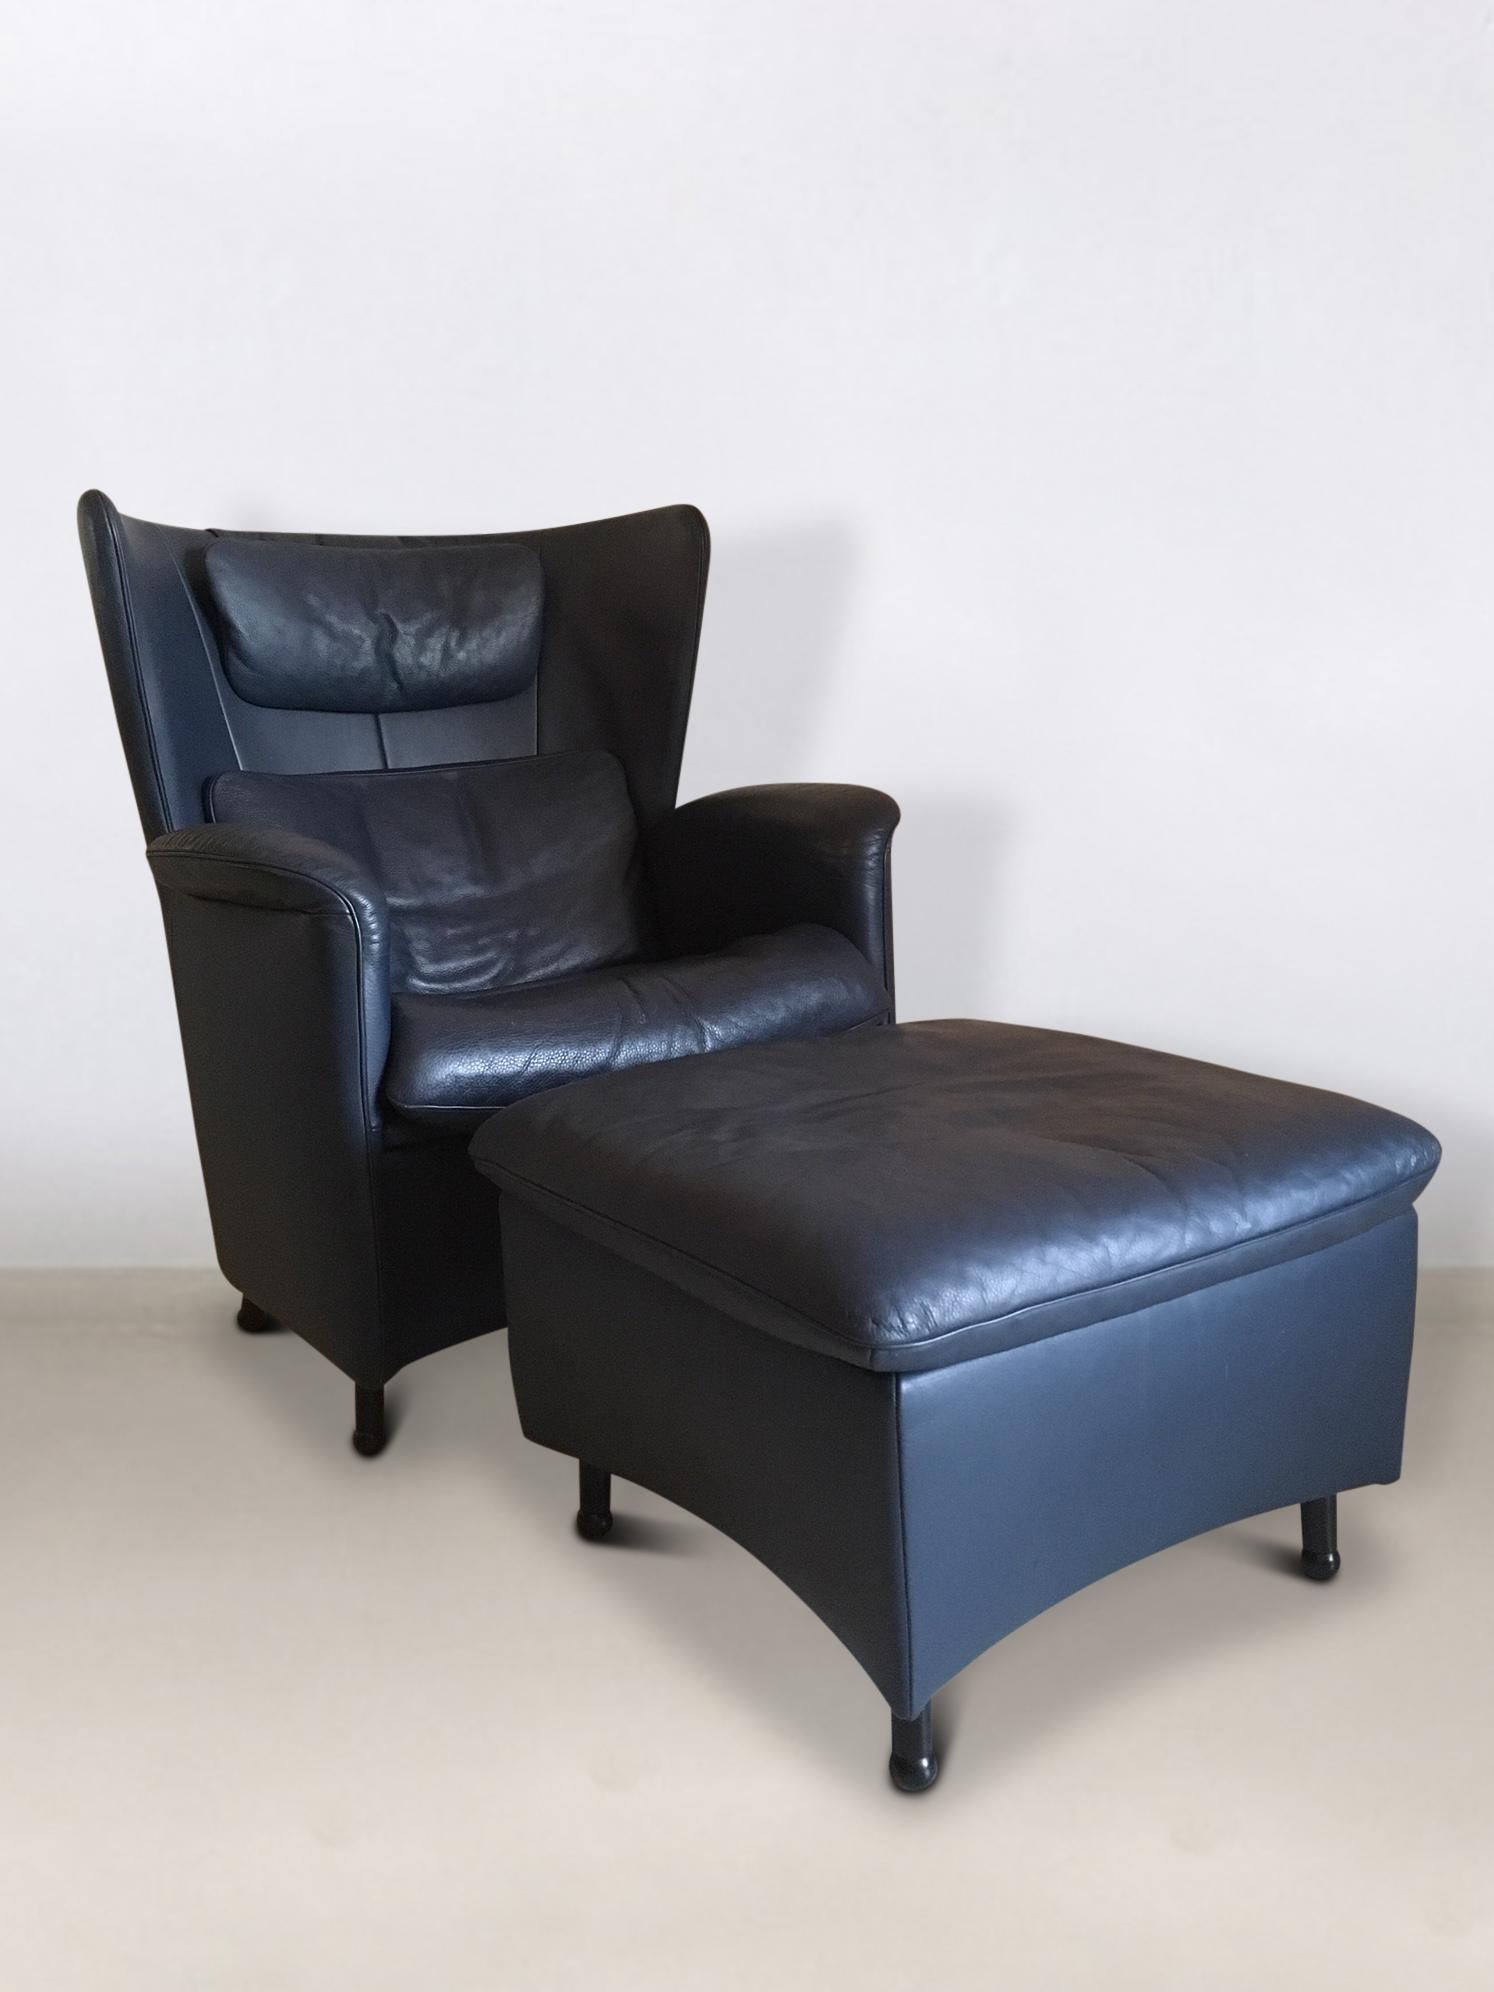 Cette chaise longue très confortable et exclusive a été conçue par Frans Schulte pour De Sede dans les années 1990. Le fauteuil est livré avec un revêtement en cuir bleu épais, des coussins (nuque et prêt) et un pouf. L'ensemble est en très bon